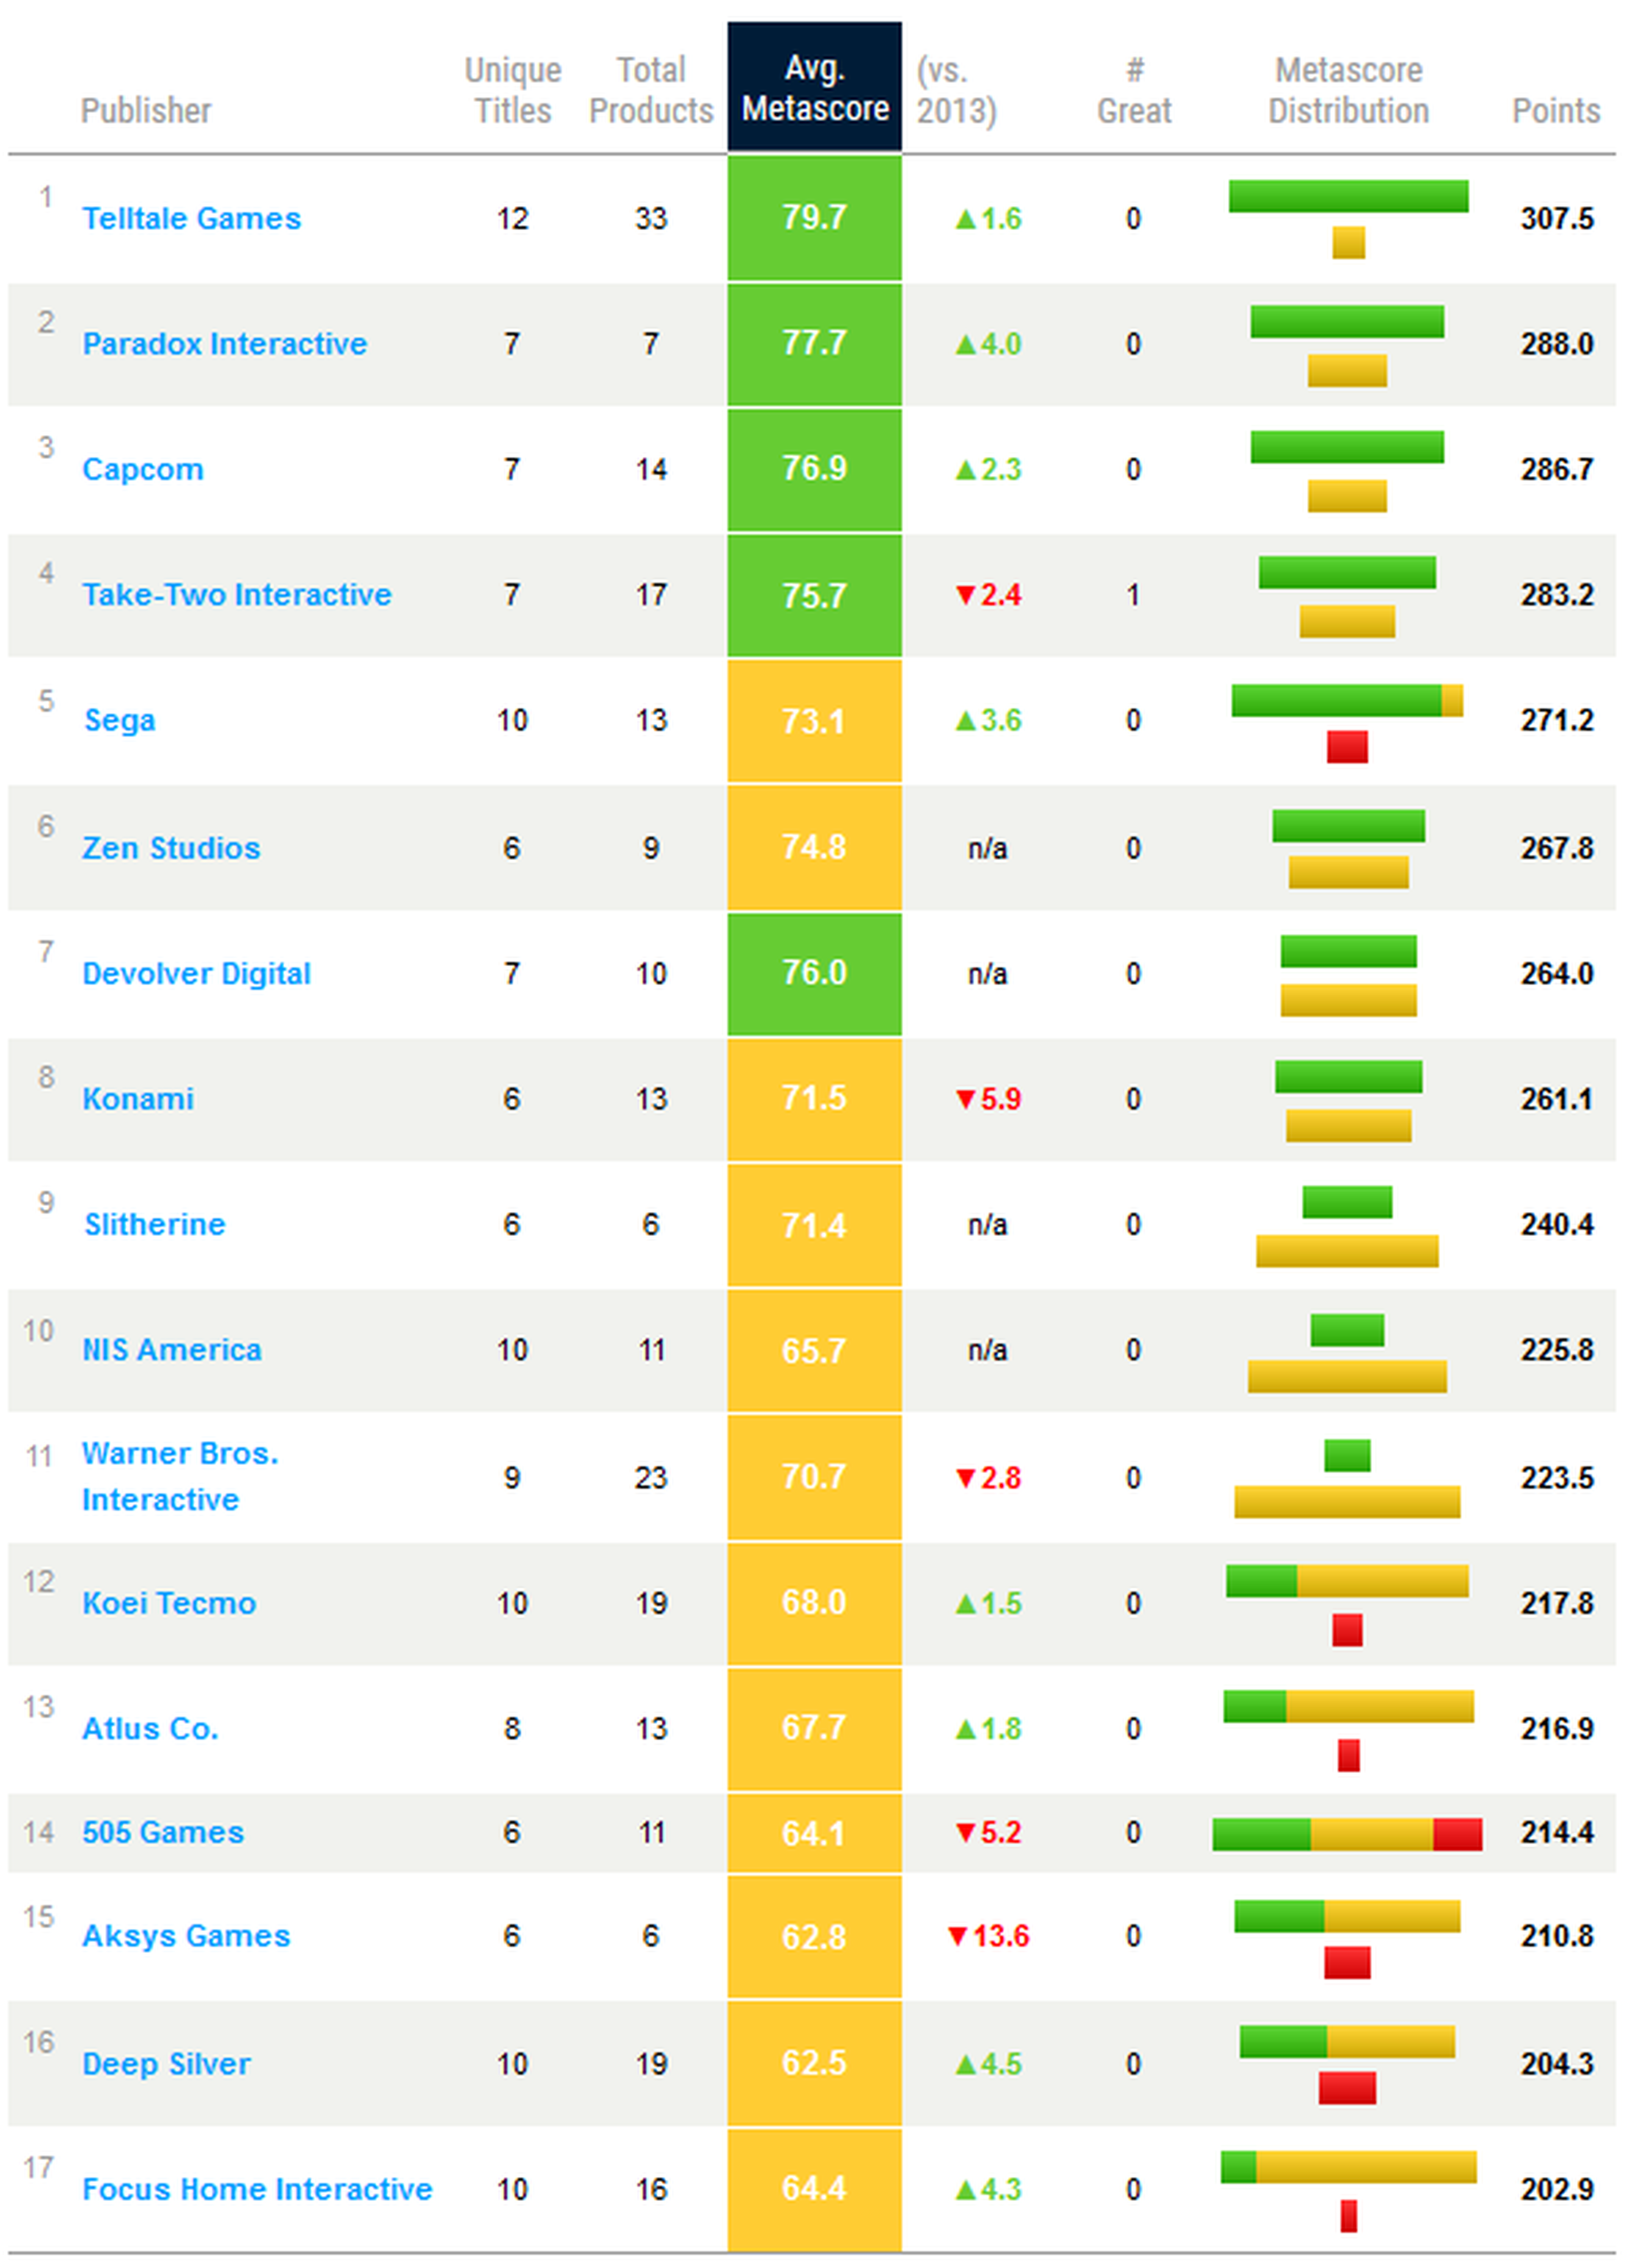 Las mejores compañías de videojuegos en 2015 según Metacritic